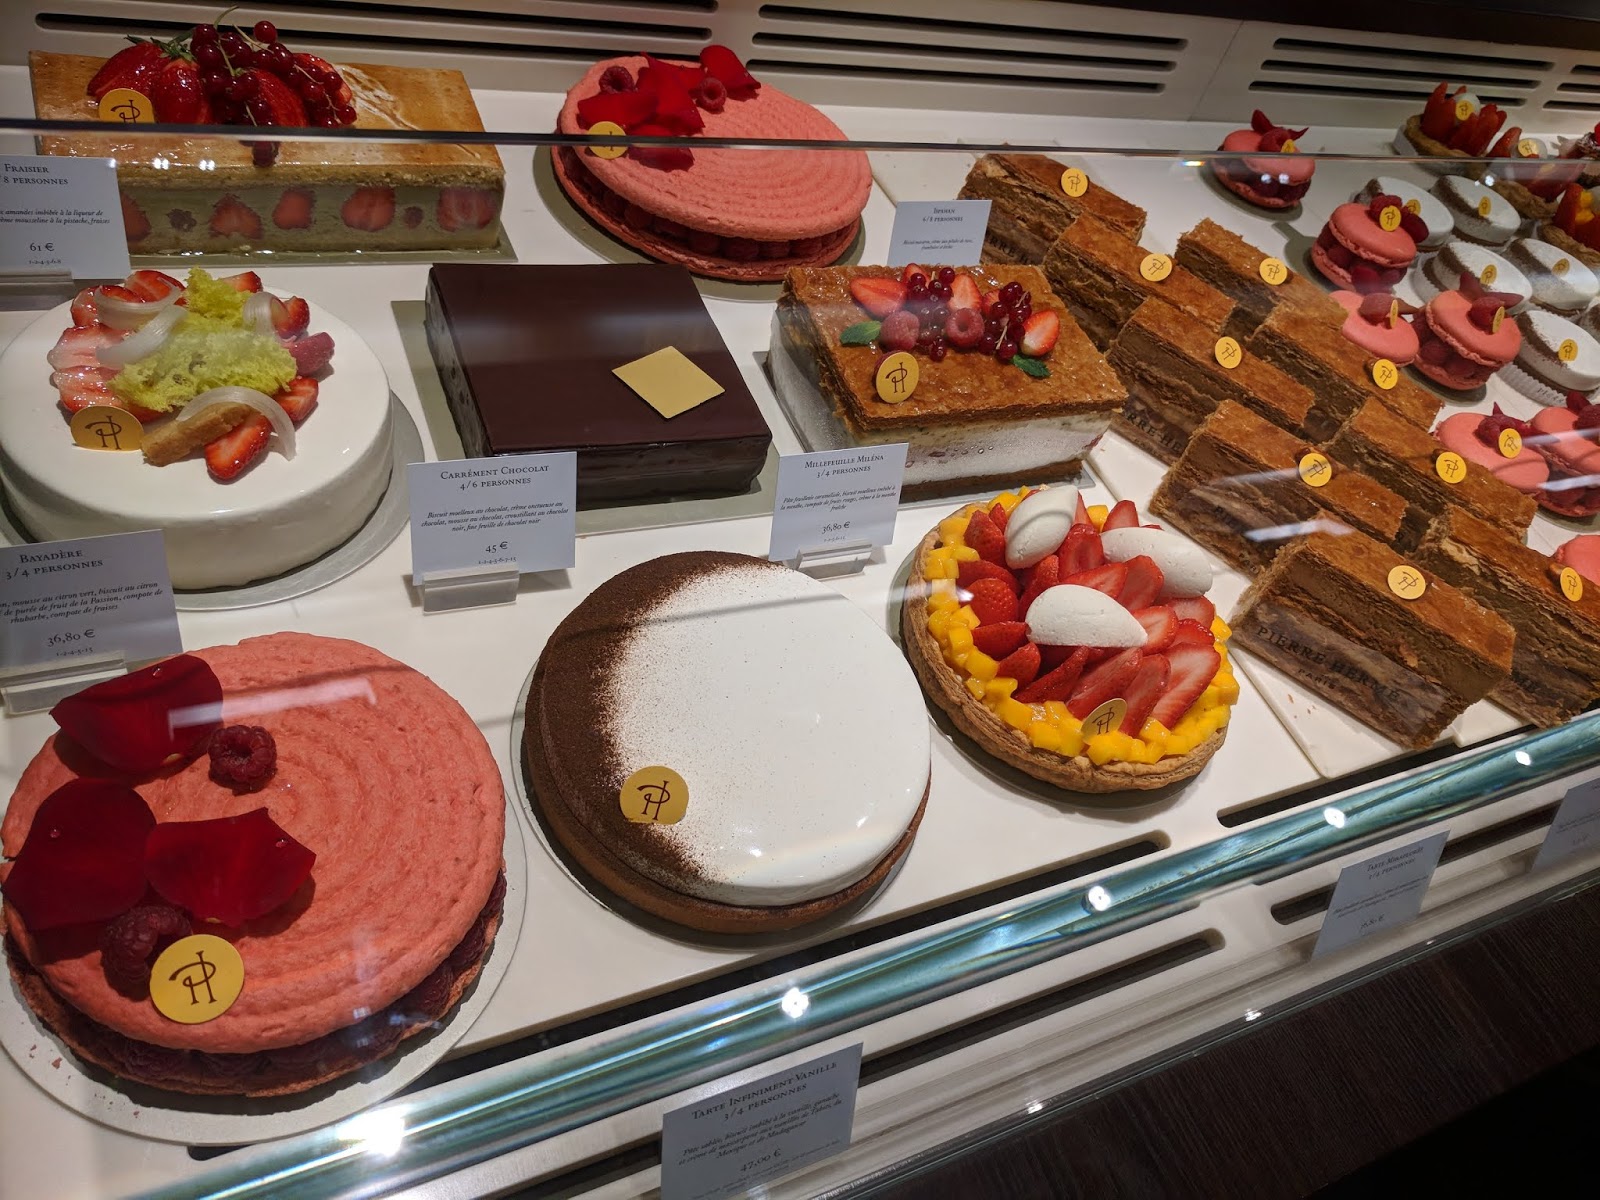 Cakes at Pierre Hermé, Paris, France